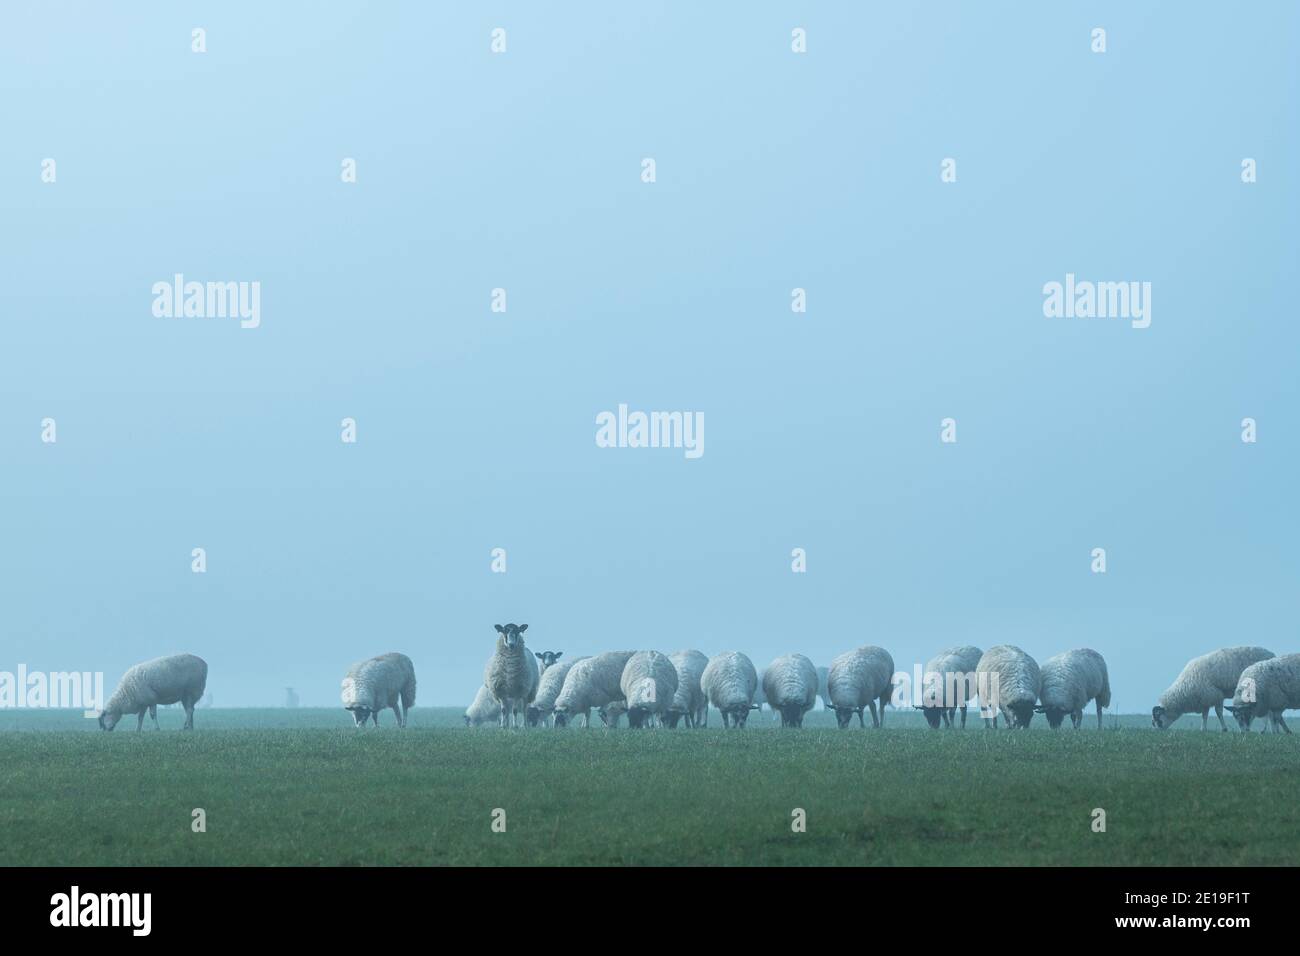 Schafschar in einem grünen Feld, Nutztiere in ländlichen Landschaft Szene auf einem Bauernhof in landwirtschaftlichen Ackerland in dichtem Nebel und Nebel, typisch englische Landwirtschaft Landschaft Landschaft Landschaft, England, Großbritannien Stockfoto